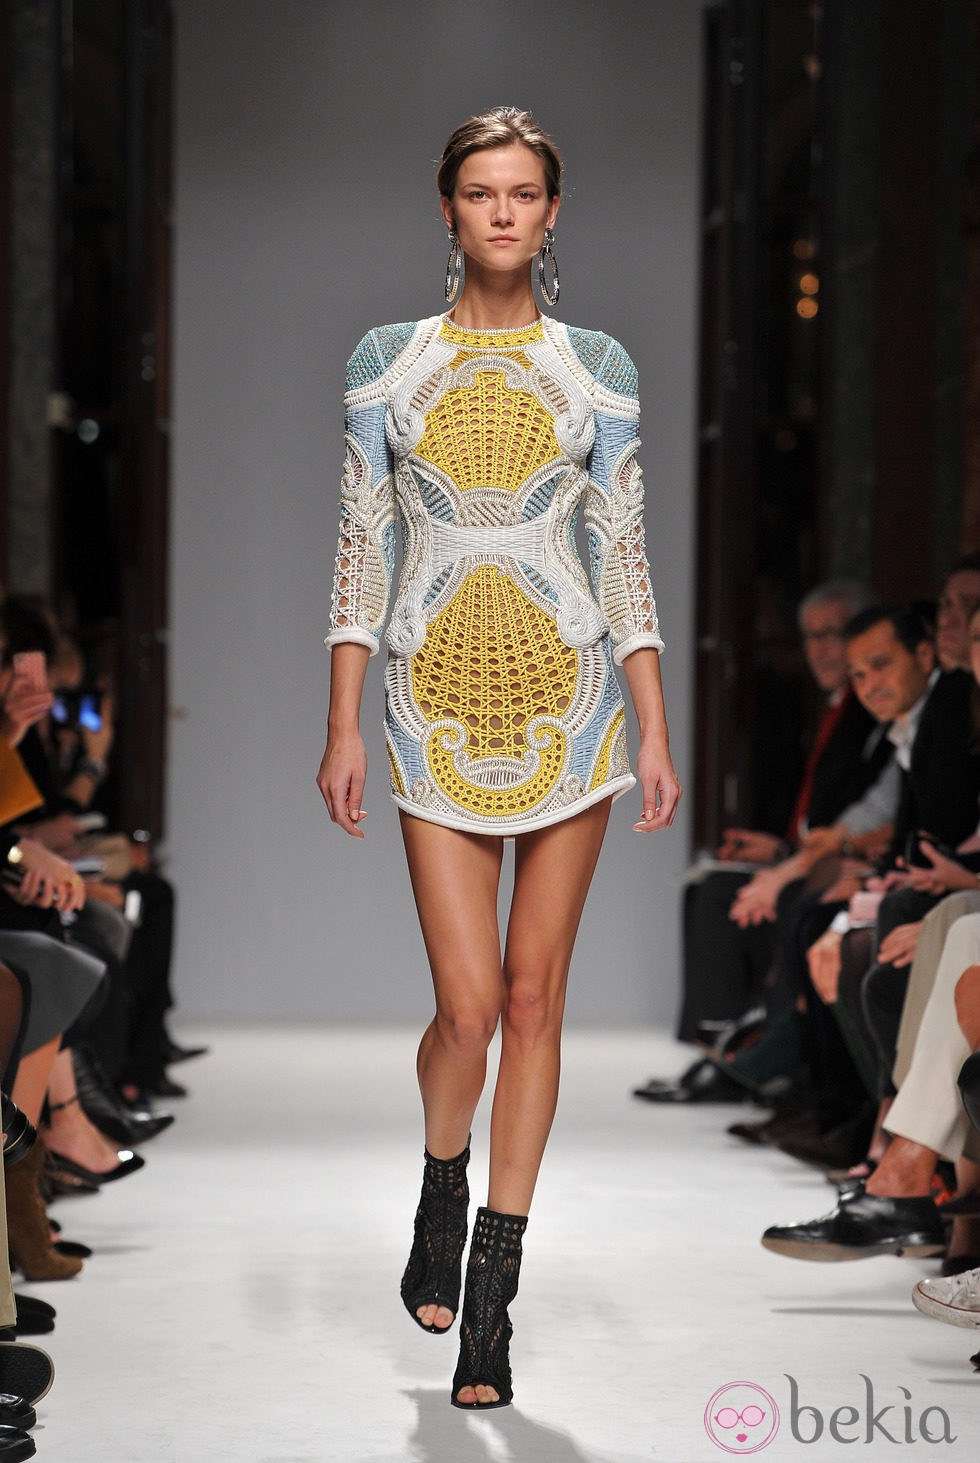 Minivestido confeccionado en cannage de Balmain en la Semana de la Moda de París primavera/verano 2013